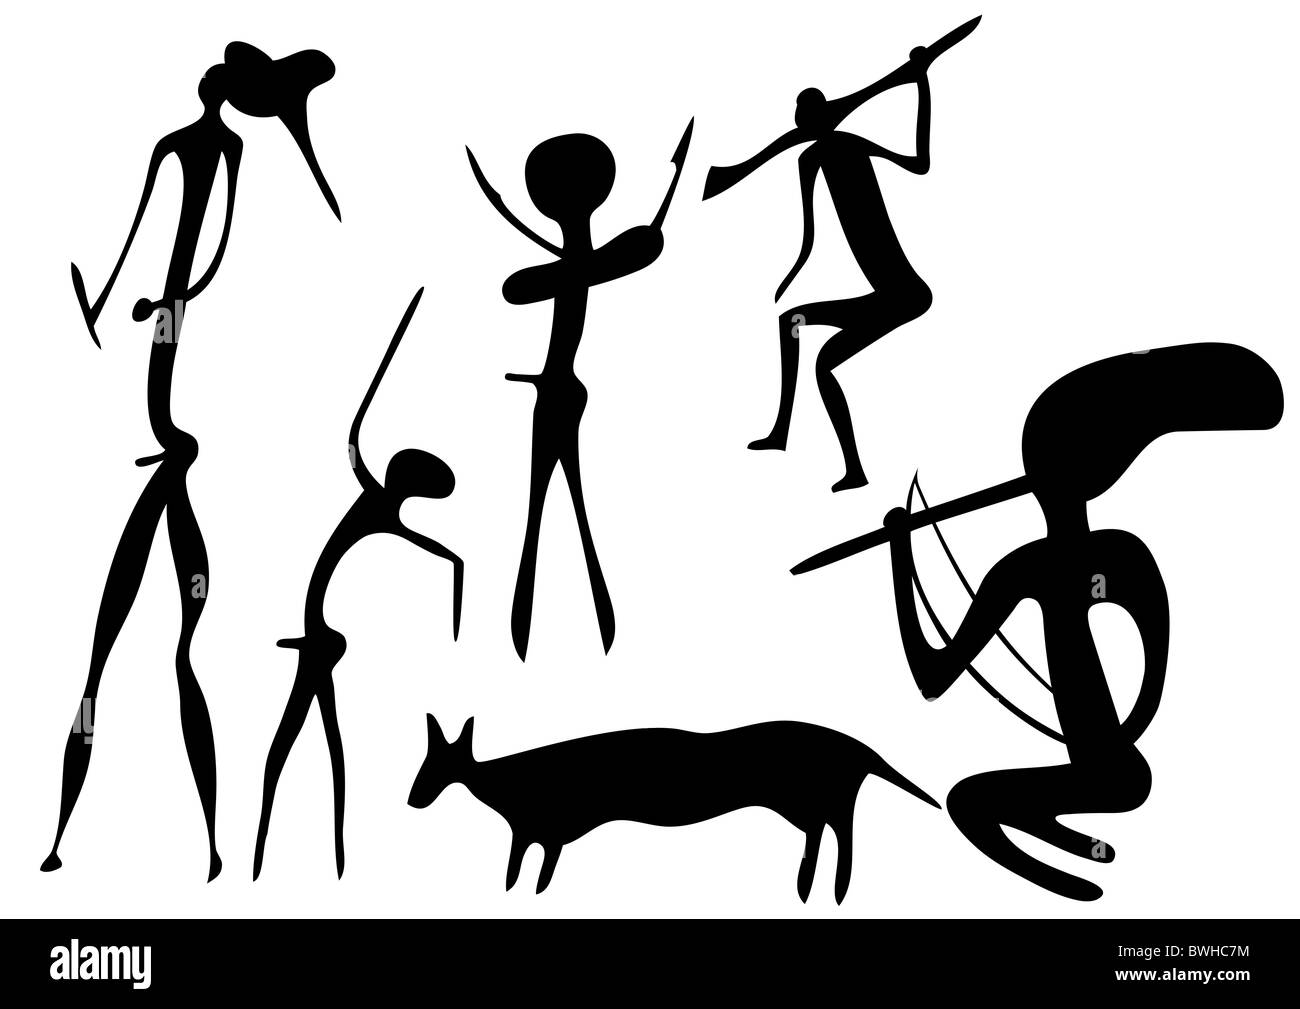 Les figures primitives se présente comme l'art primitif - l'art rupestre Banque D'Images